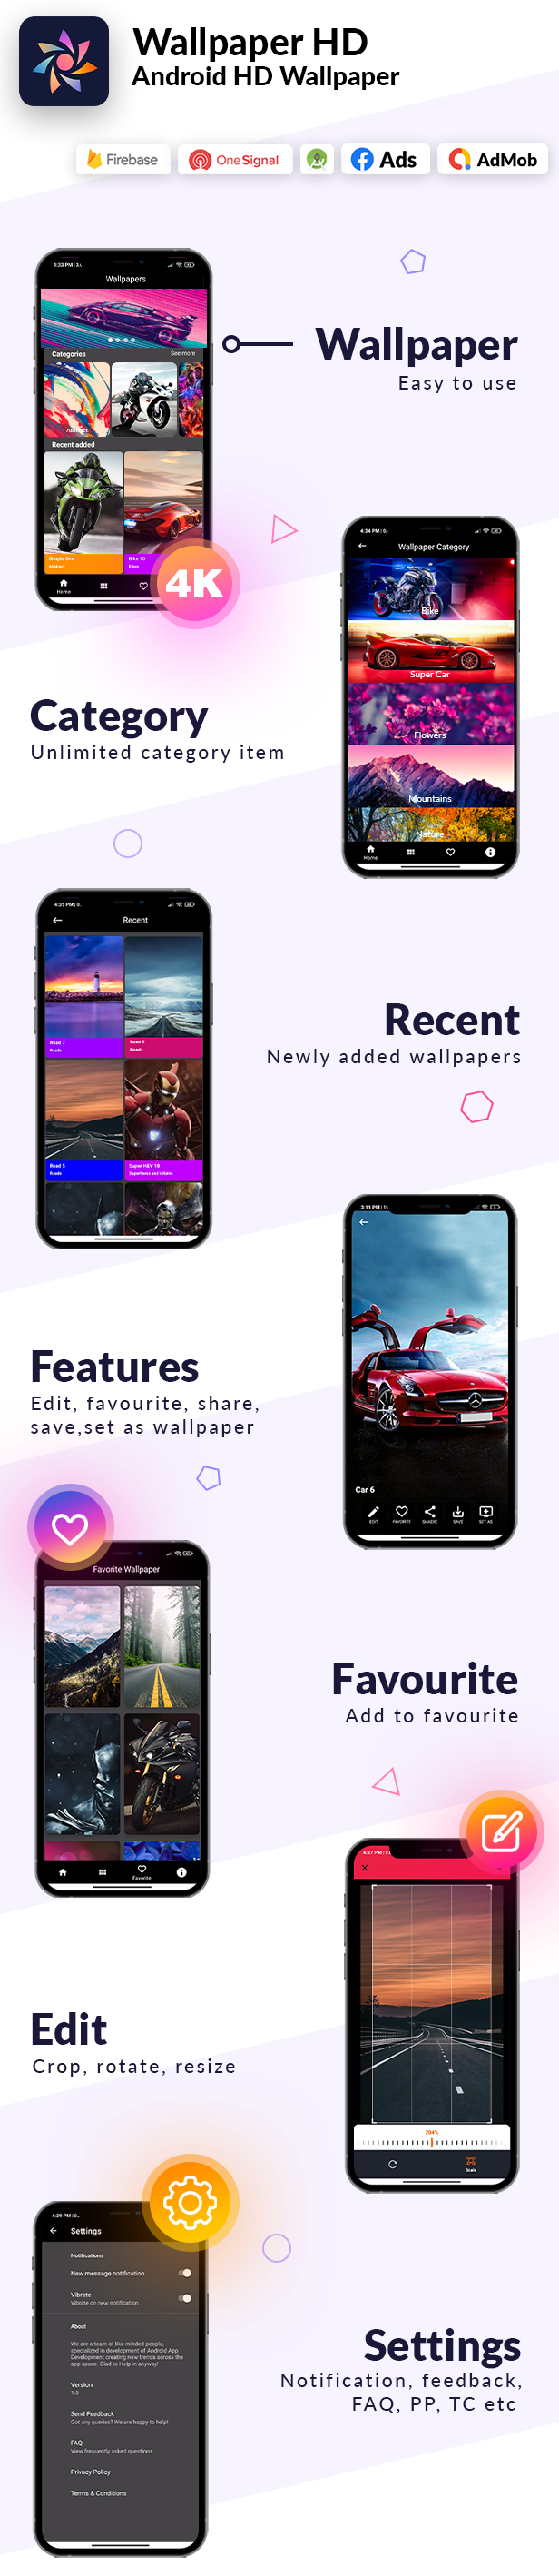 Wallpaper App Android (4k, HD) - 4